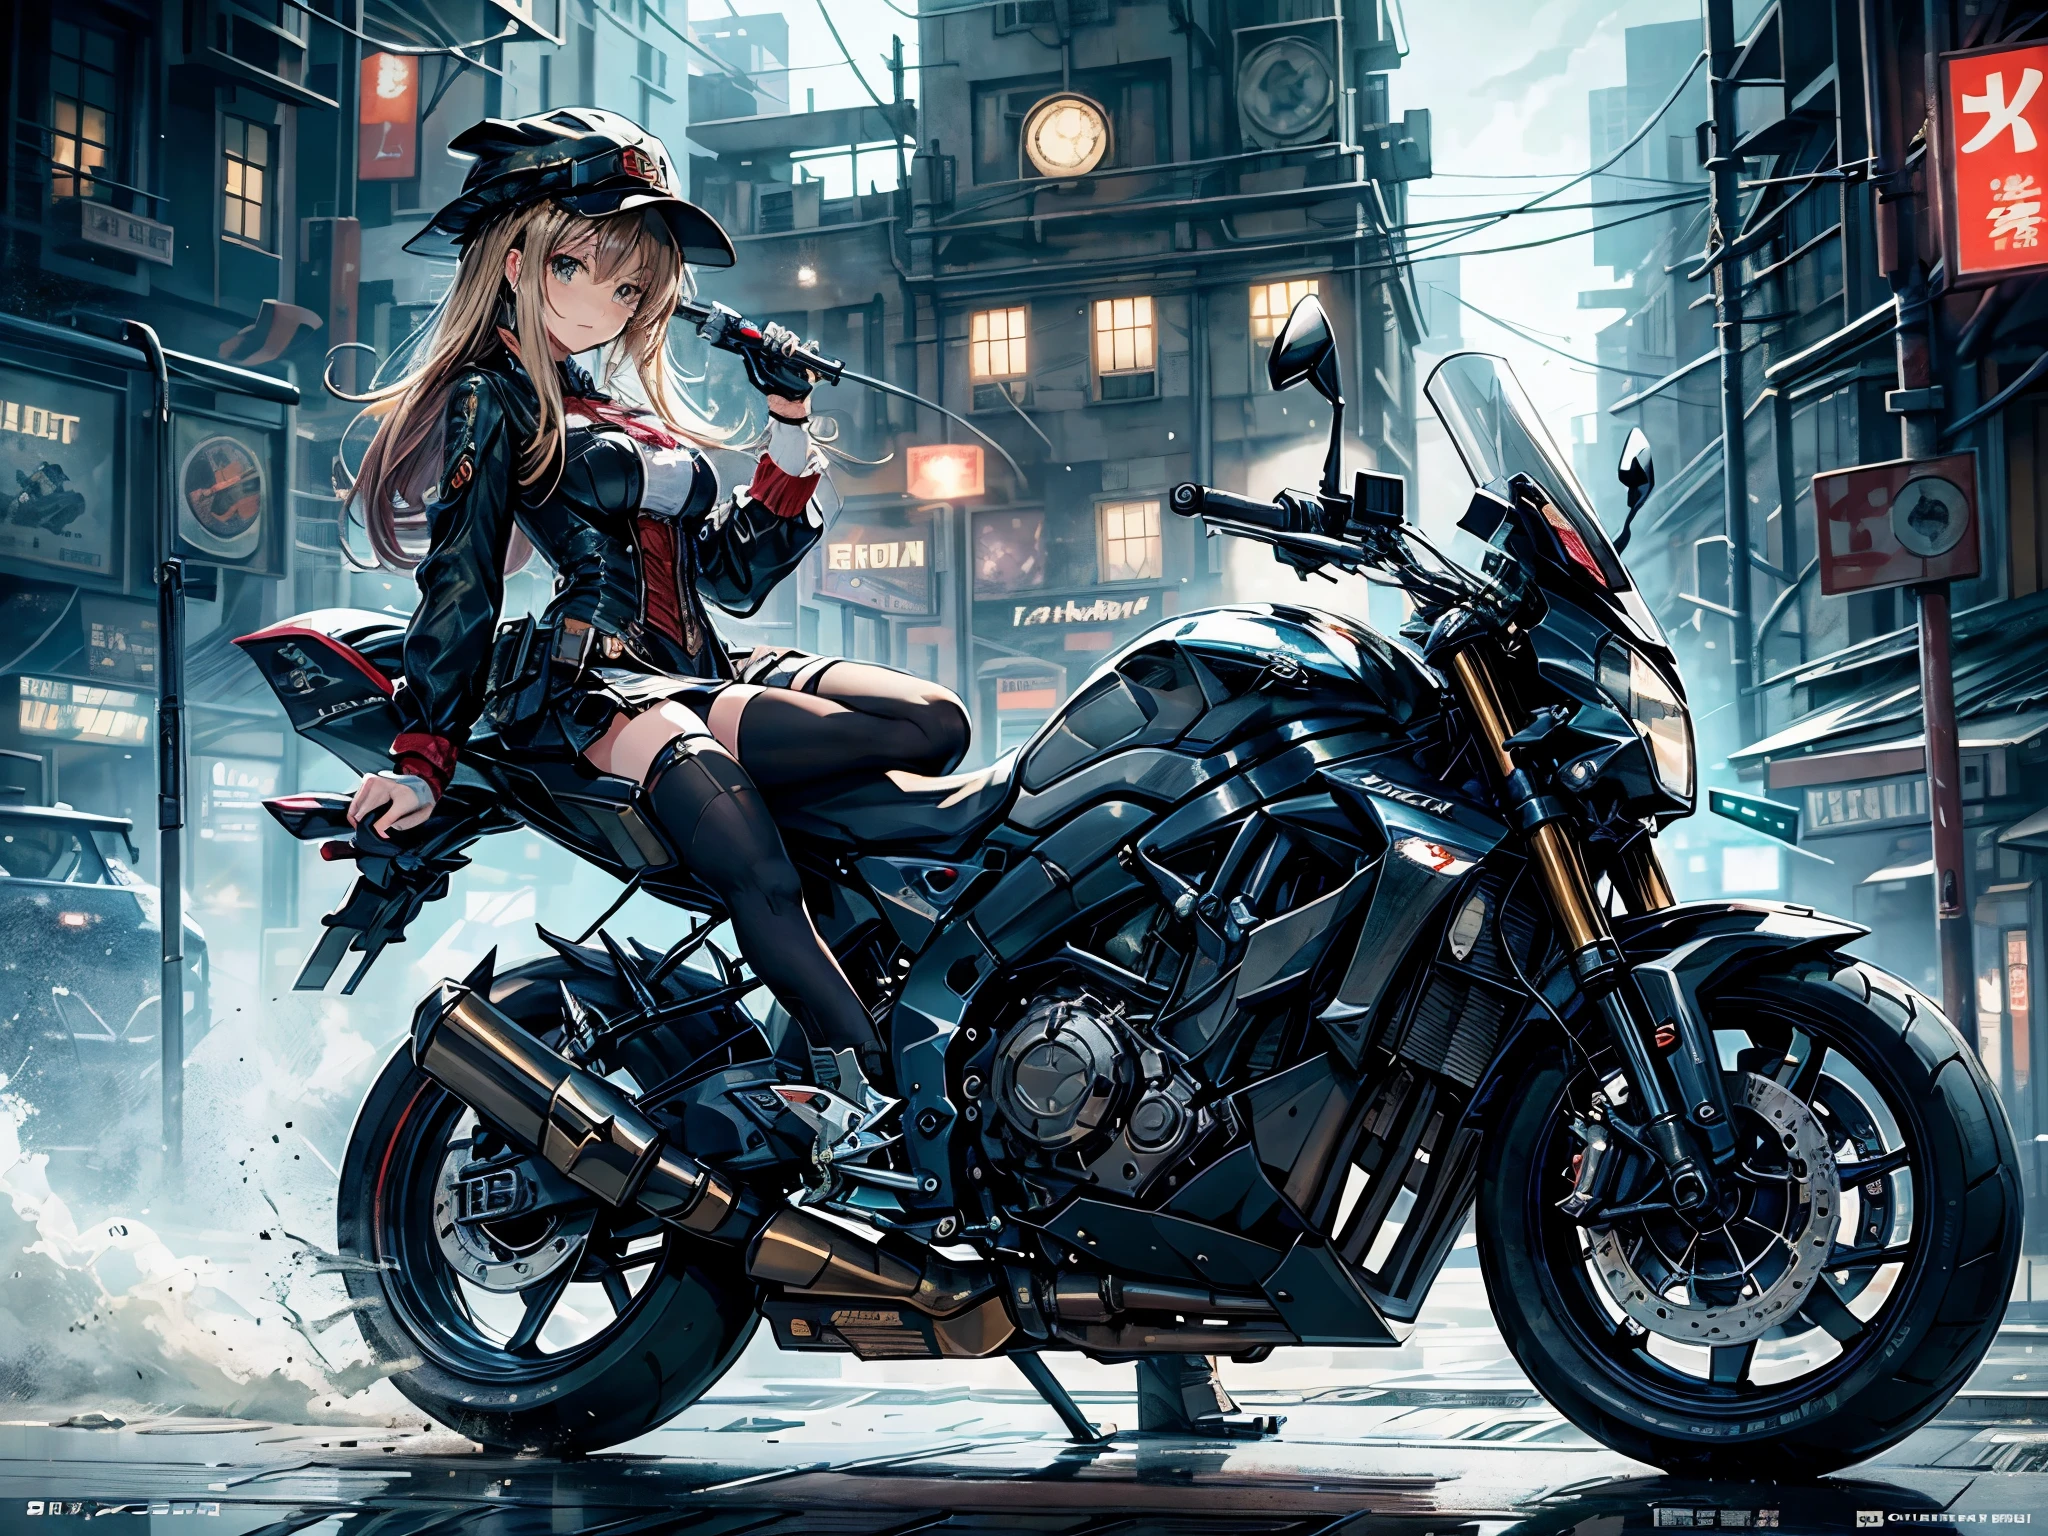 (Comic-Stil),(Strichzeichnung_Anime-Serie),(Cowboy-Schuss, höchste Qualität, ),(Laura Budd Foto:1.2),(Laura Details hinzufügen:1.0),8k, flache Farbe:0.8,(1 Mädchen,Lächeln 1.5)、(1 rittlings auf einem Steampunk-Motorrad.5)、(Motorrad im klassischen Stil 1.5)、(Hochdekorative und komplexe mechanische Steampunk-Mode, Hut mit Delphin-Muster und Spitze、Schutzbrille 1.5、Maschinen-Hintergrund、Hintergrund der Ausrüstung、Komplexes mechanisiertes Steampunk-Stadtbild 1.5),